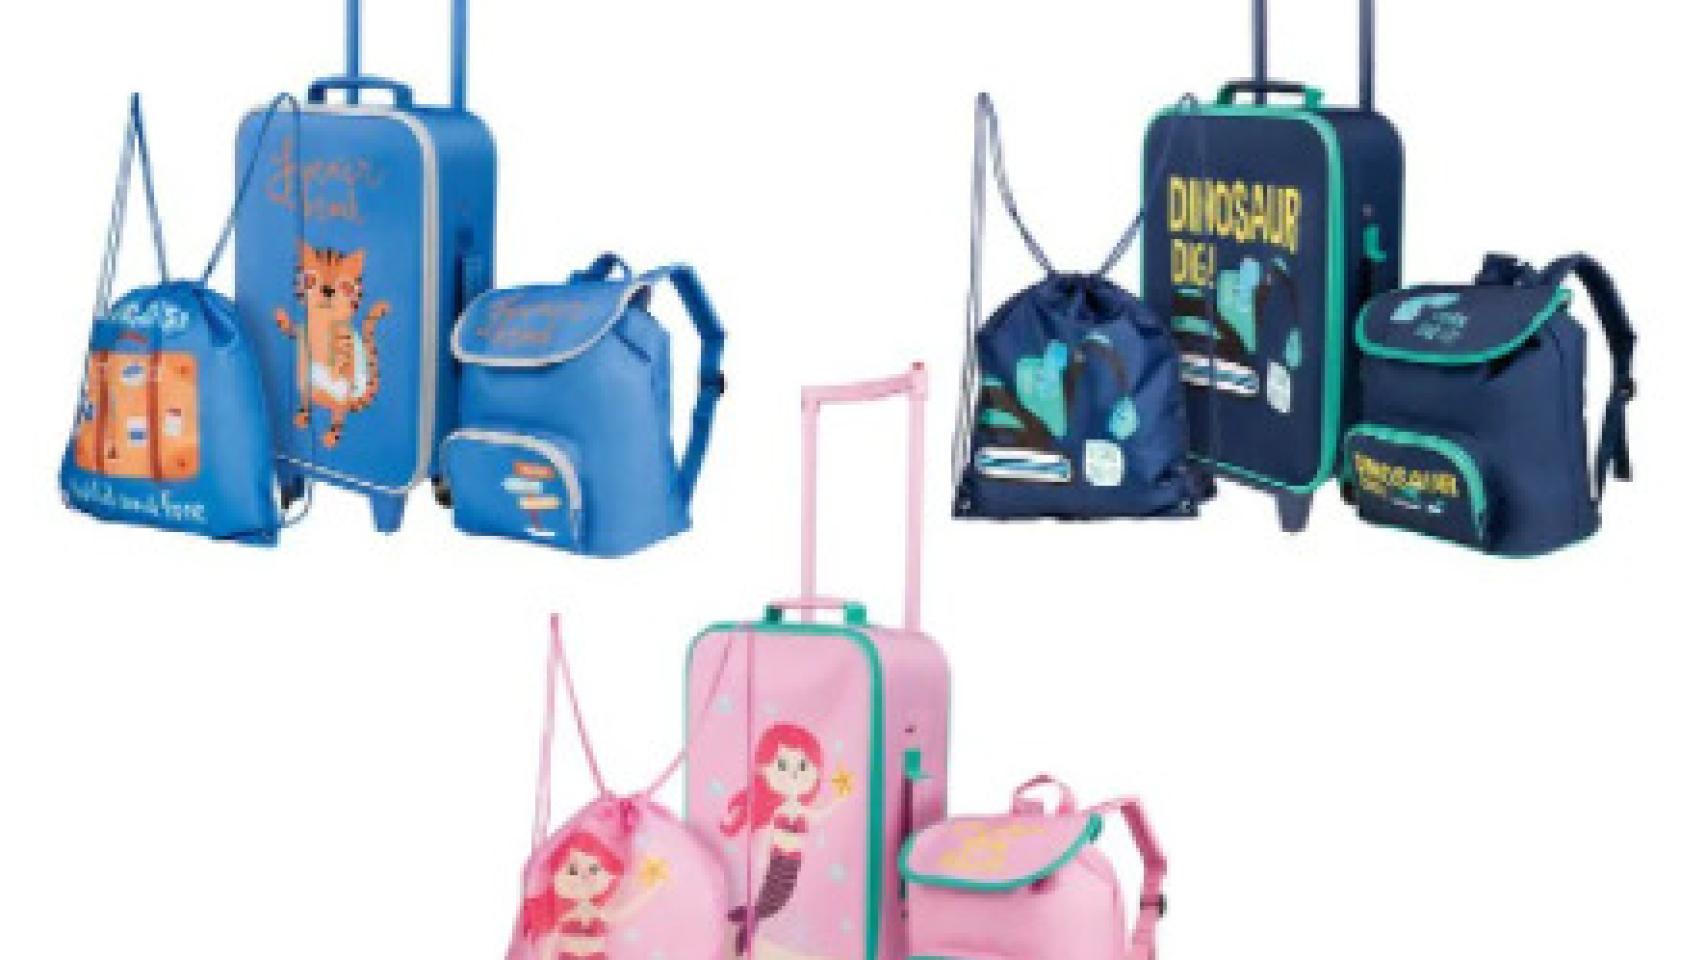 Las nuevas maletas de Lidl tiradas de precio que se van agotar en horas: 18 euros